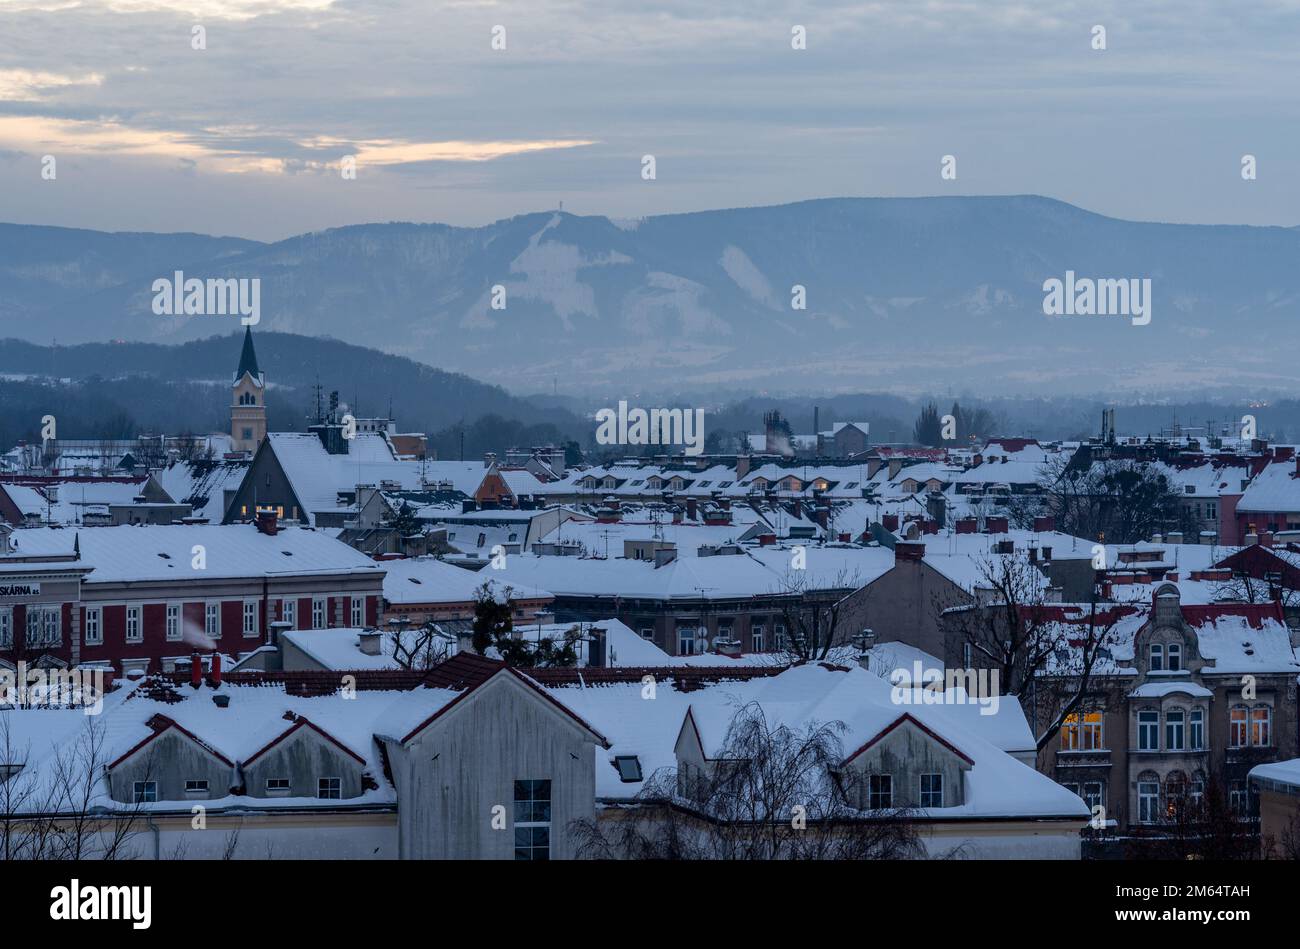 Stadtbild von Cesky Tesin, mährische schlesien-Region, Tschechische Republik, schneebedeckte Dächer und beskiden-Berge im Hintergrund Stockfoto